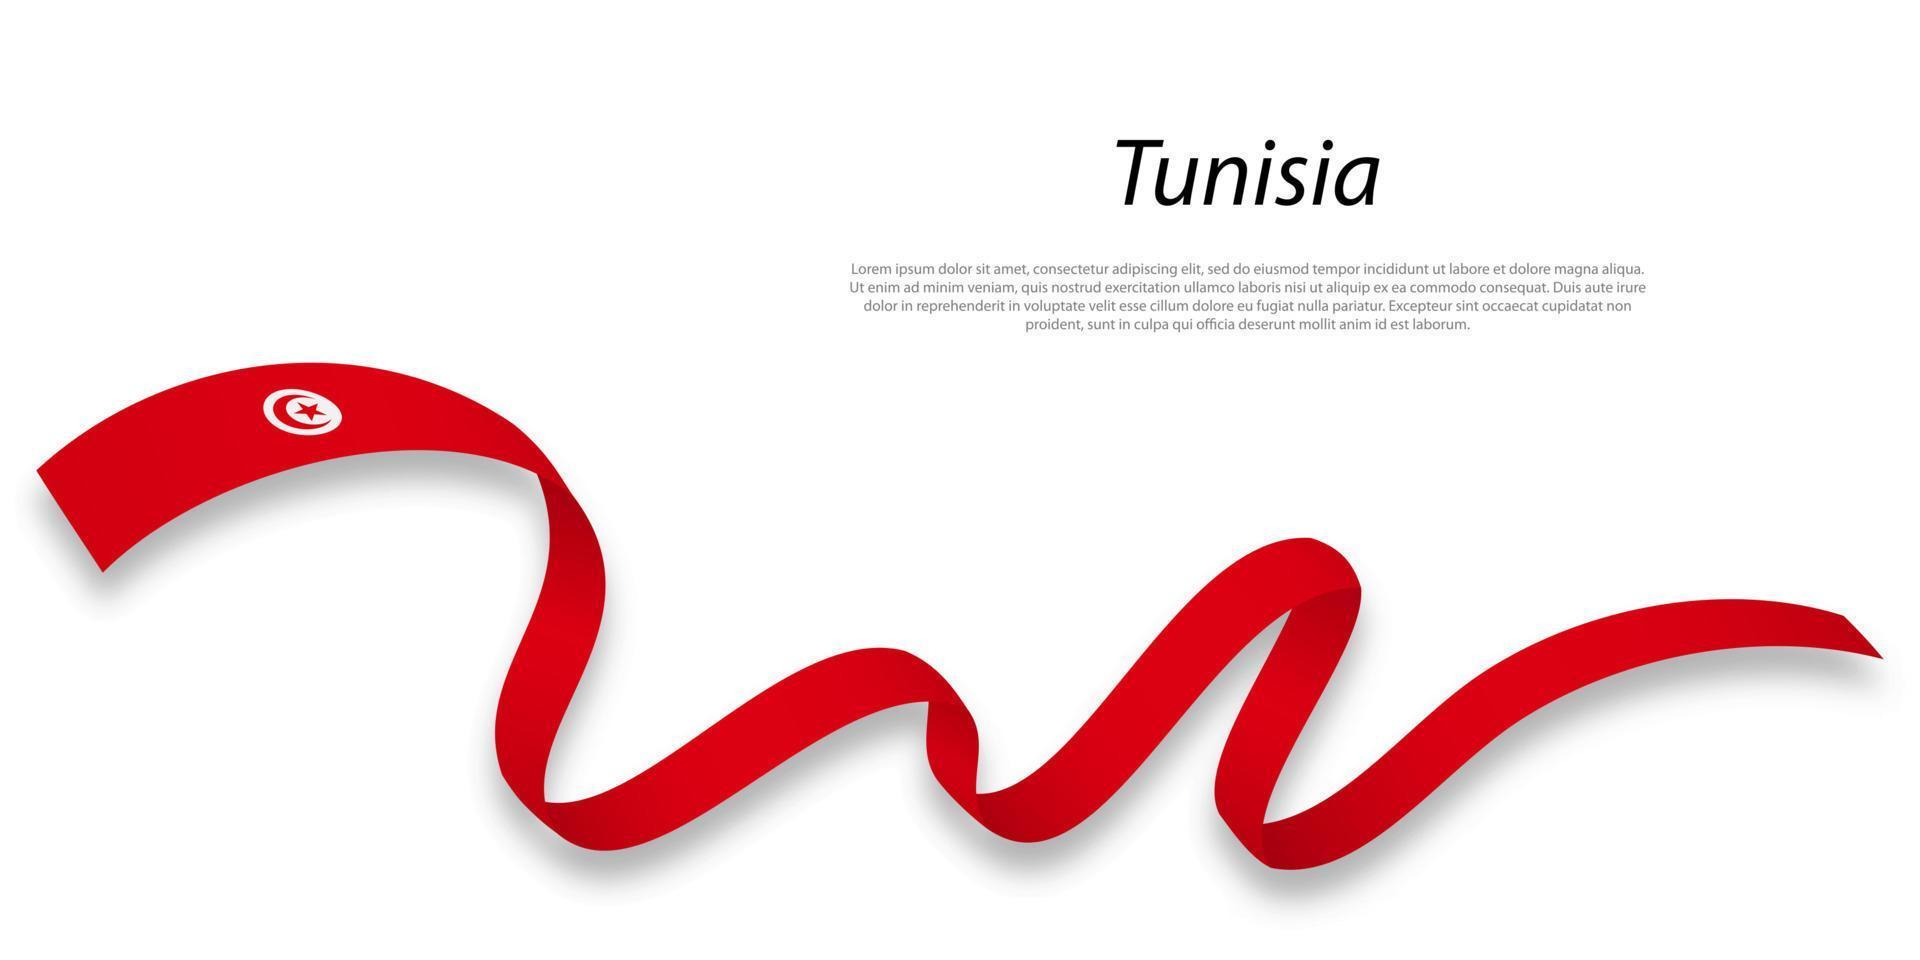 sventolando il nastro o lo striscione con la bandiera della tunisia. vettore